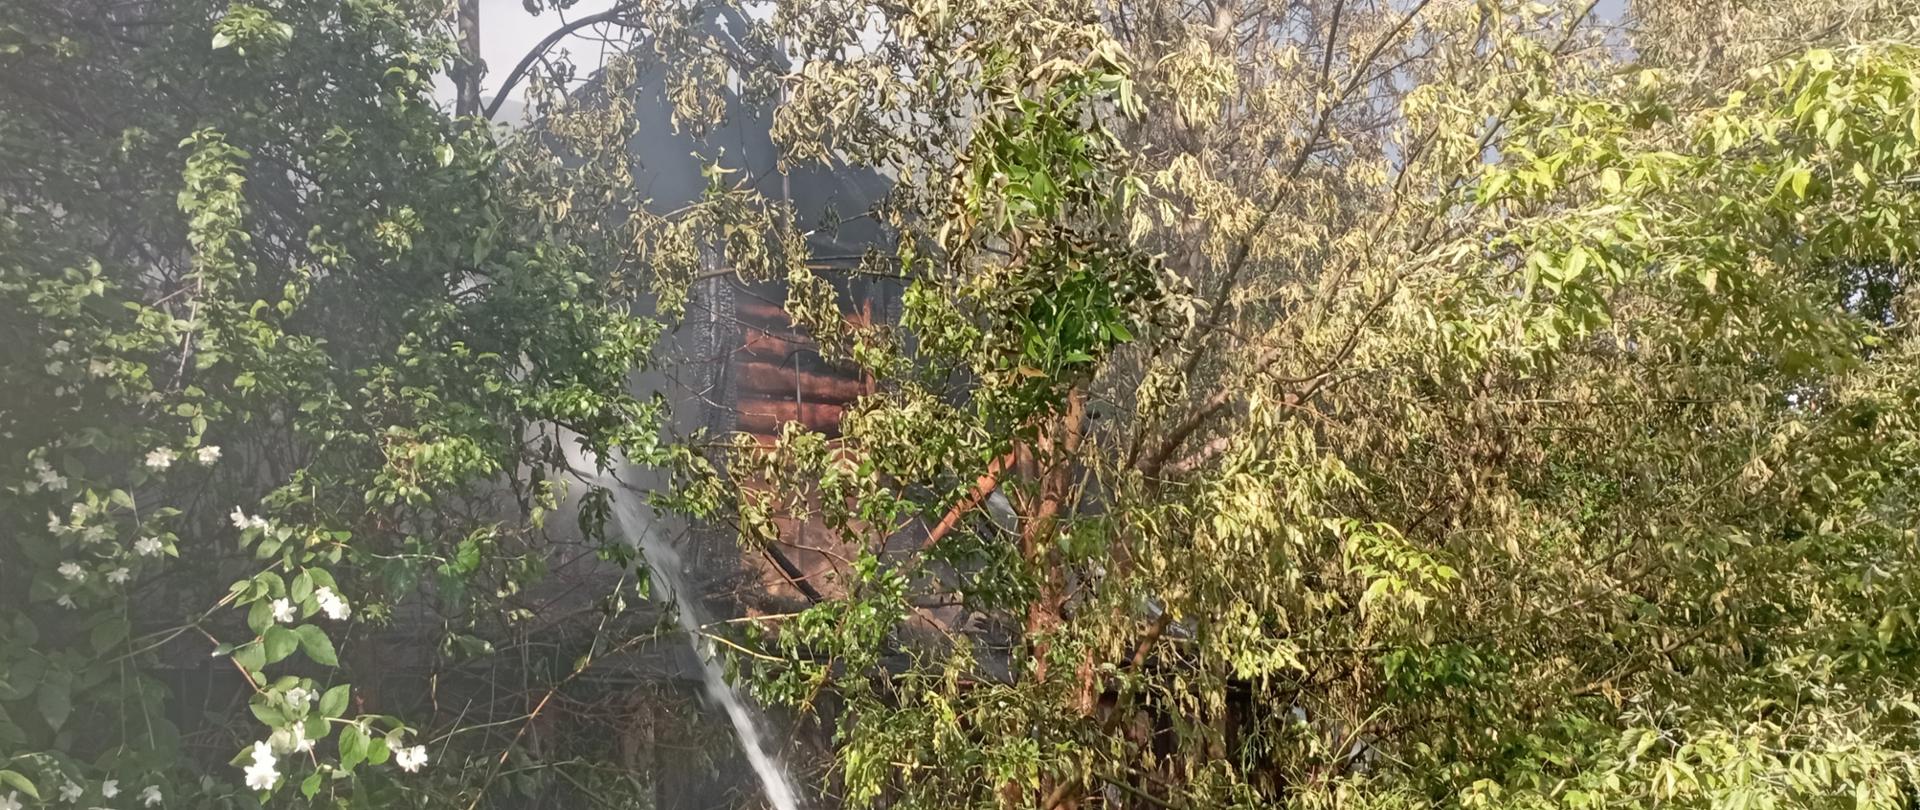 Na zdjęciu pokazano fragment ukrytego w zaroślach domu. Centralnie widać strumień wody podawany na pożar. 